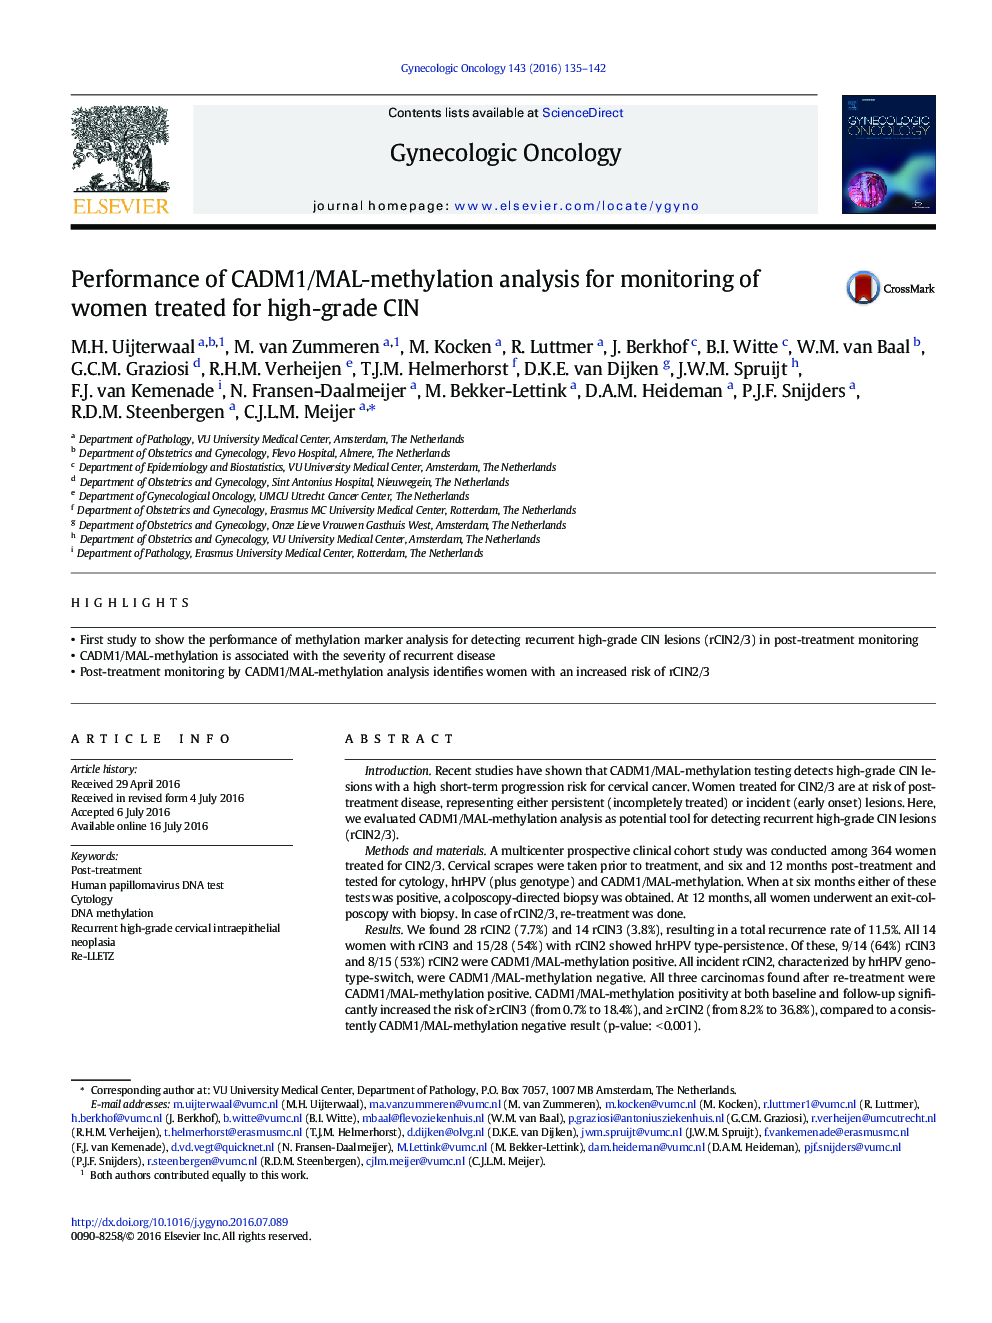 عملکرد تجزیه و تحلیل متیلاسیون CADM1/MAL برای نظارت بر زنان درمان شده برای CIN با درجه بالا 